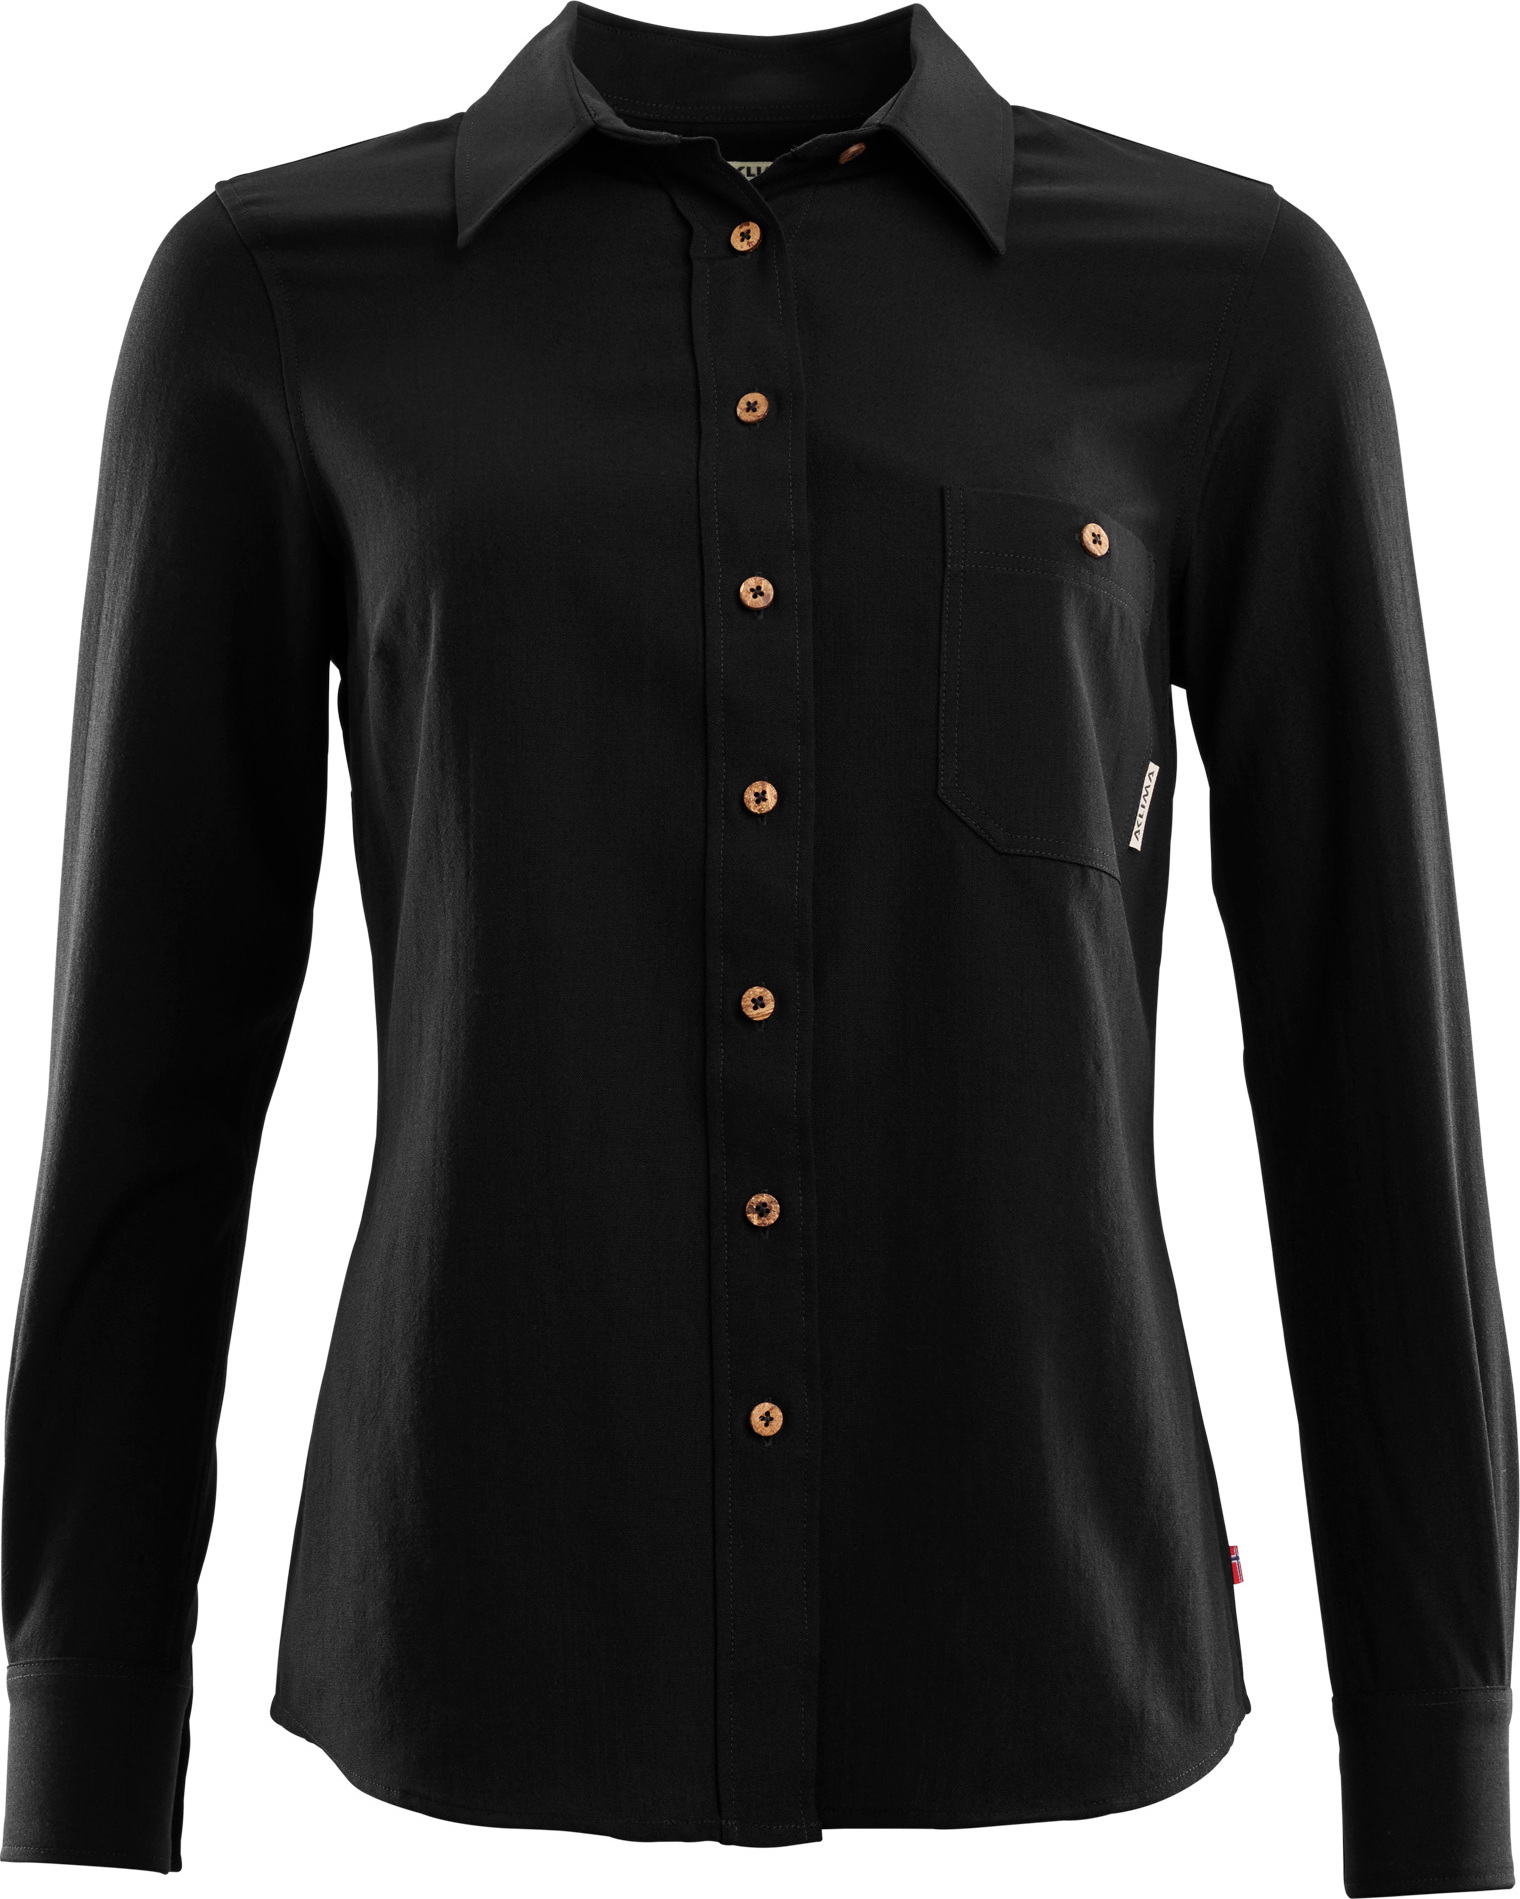 LeisureWool Woven Wool Shirt Woman Jet Black | Buy LeisureWool 